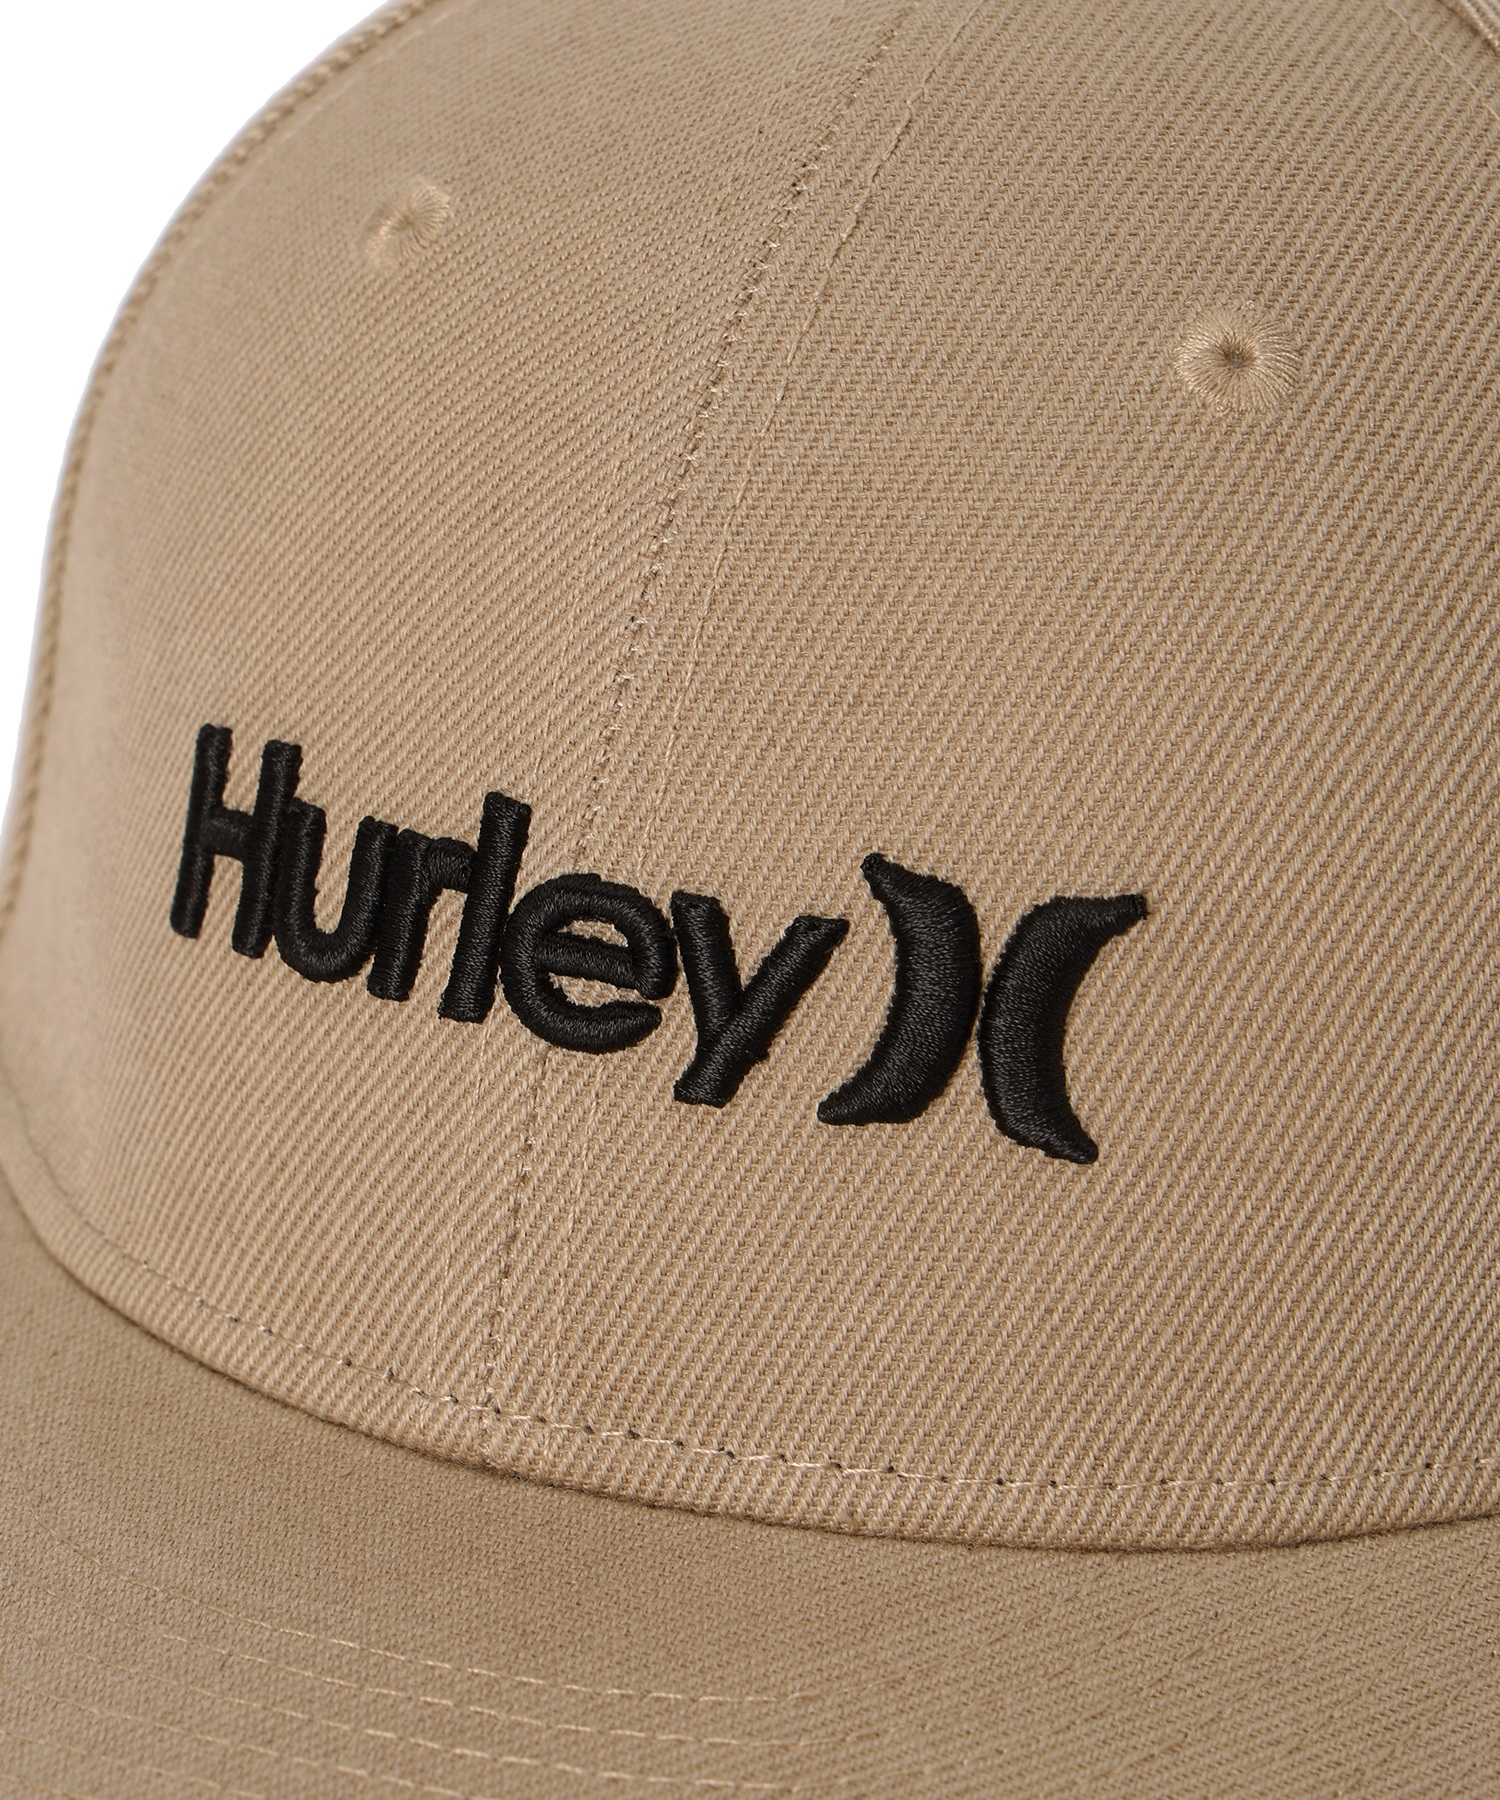 Hurley ハーレー CAP  BHW2332012 キッズ キャップ(BLK-F)